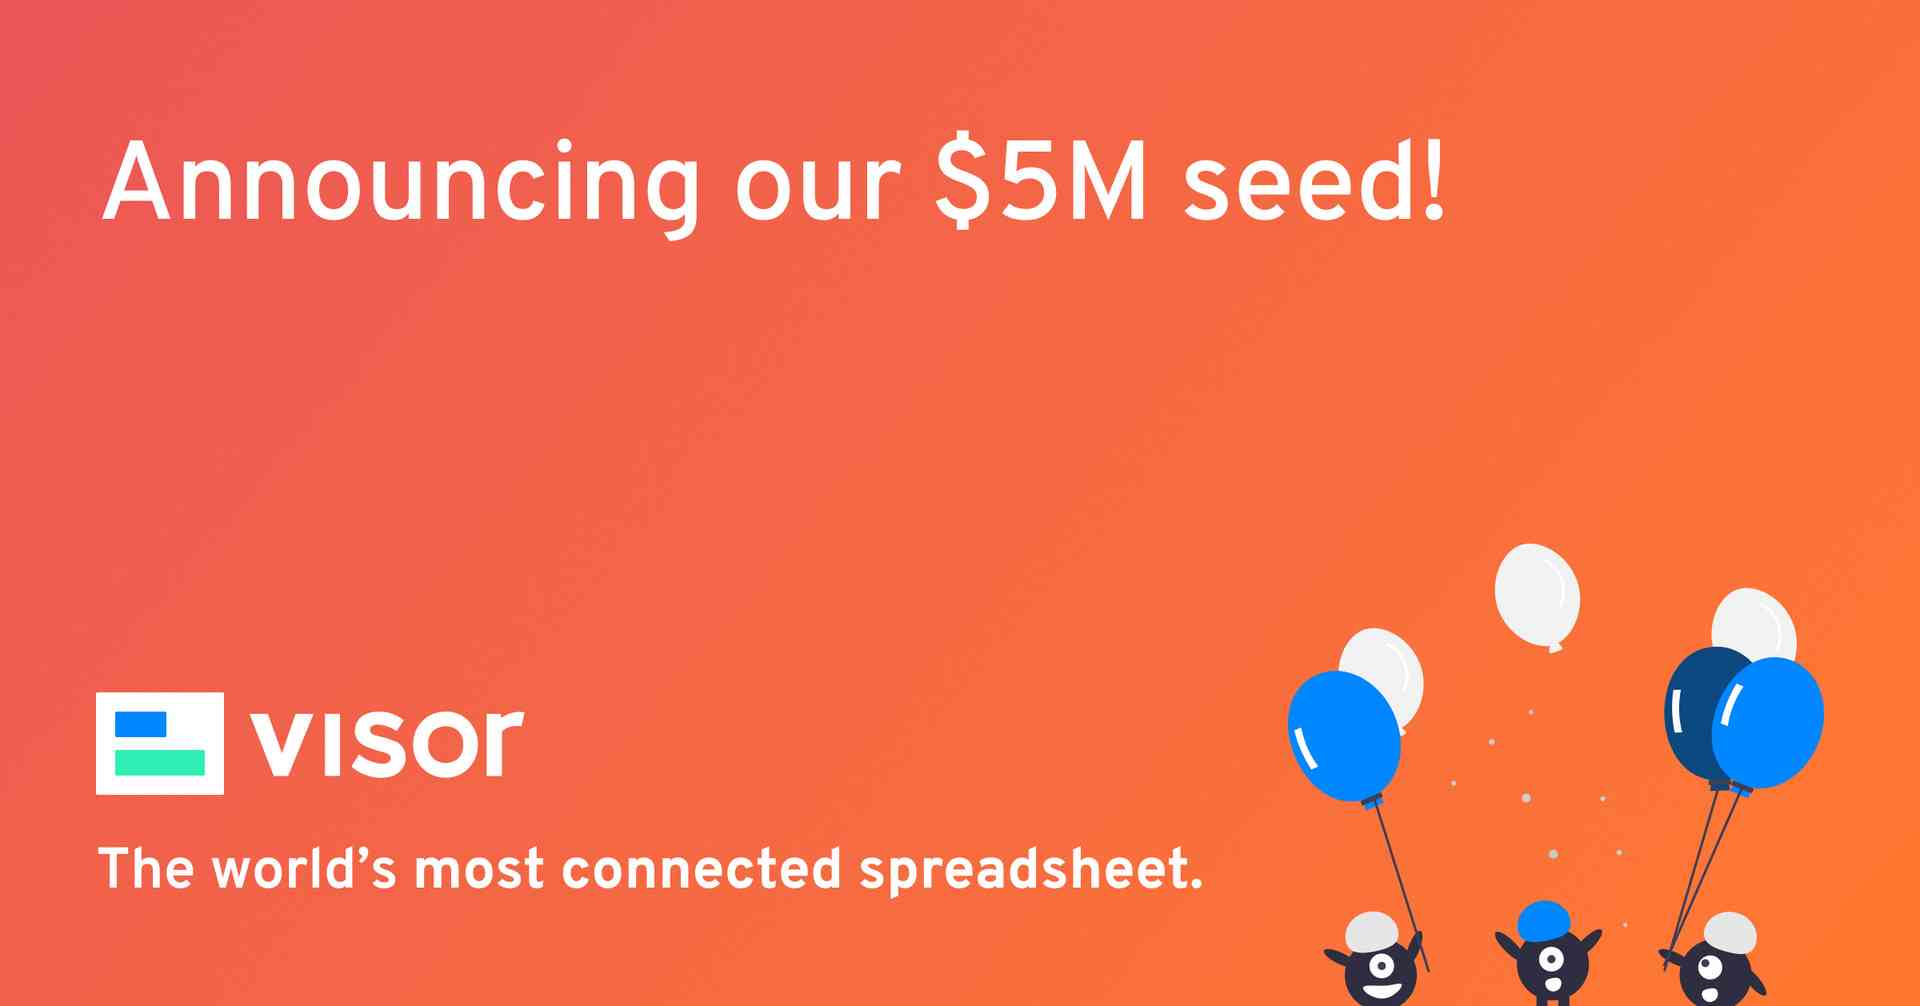 visor announcing $5 million seed